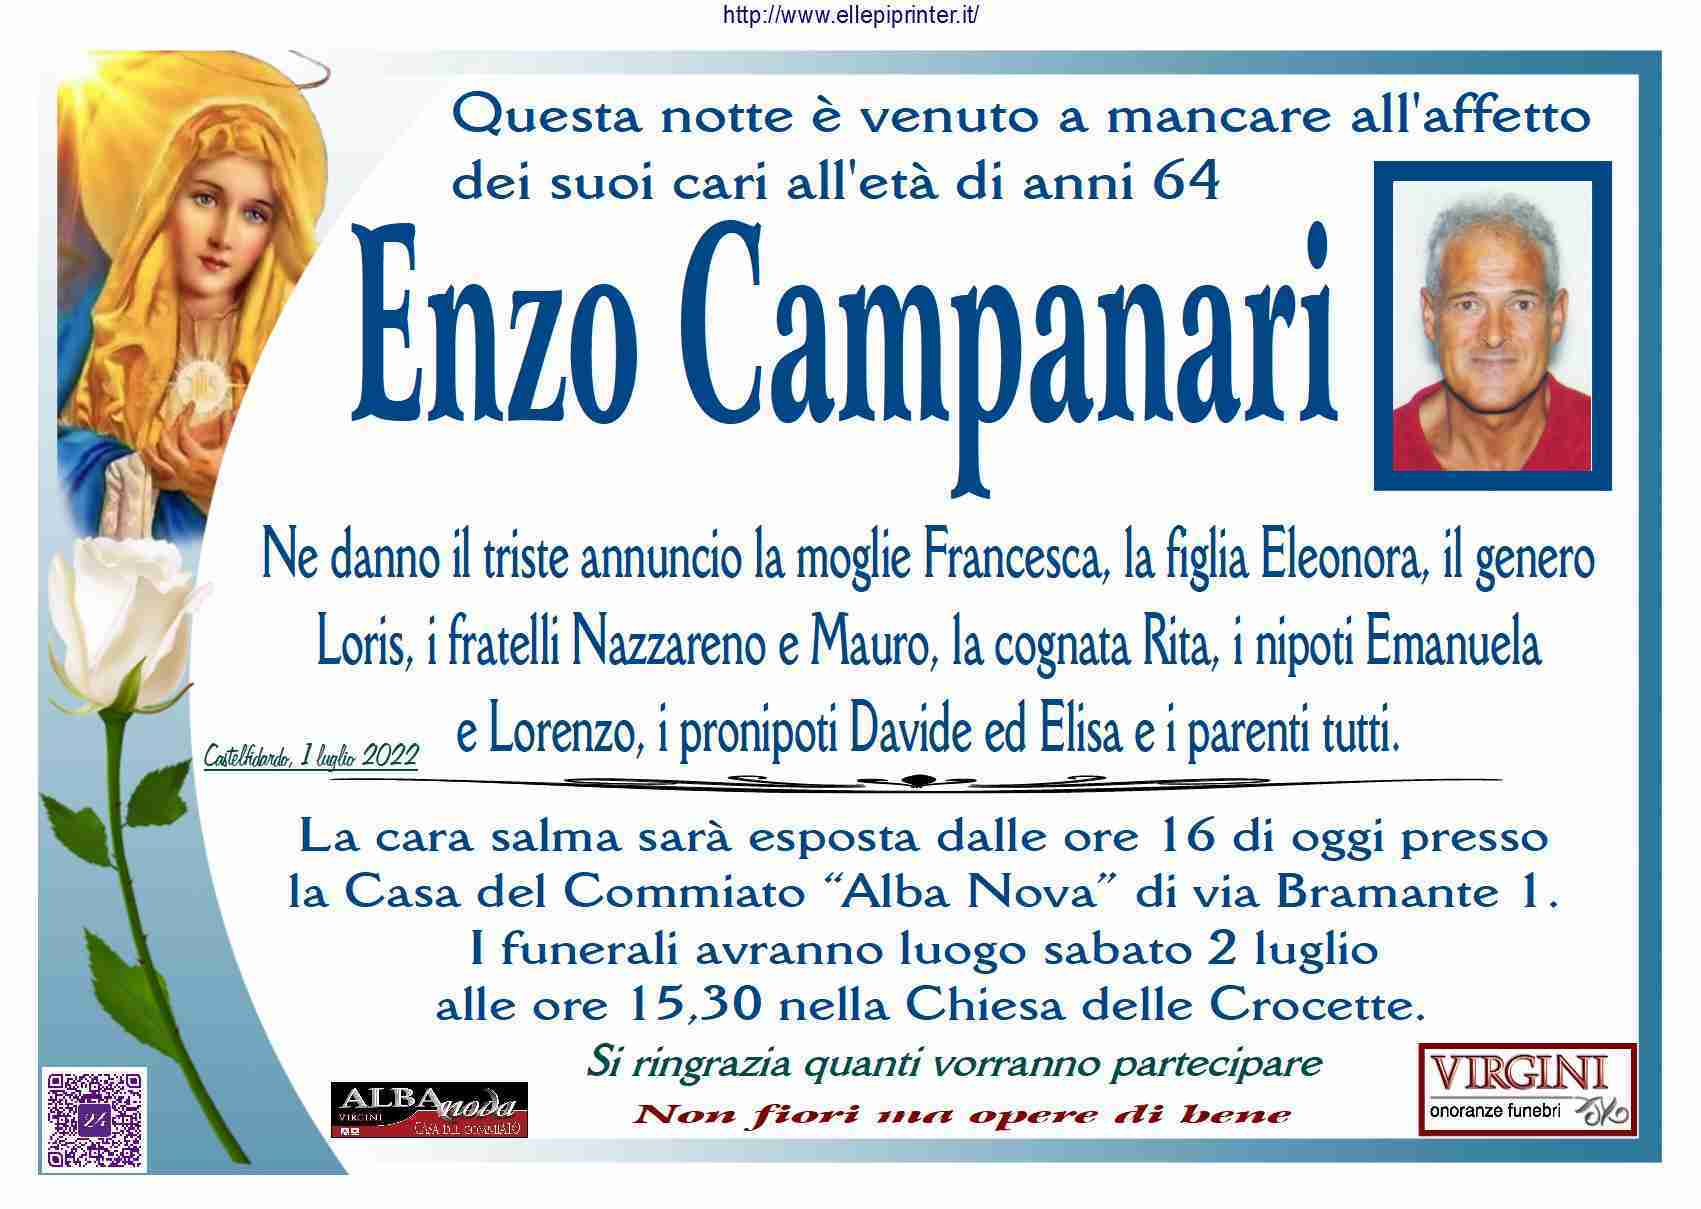 Enzo Campanari